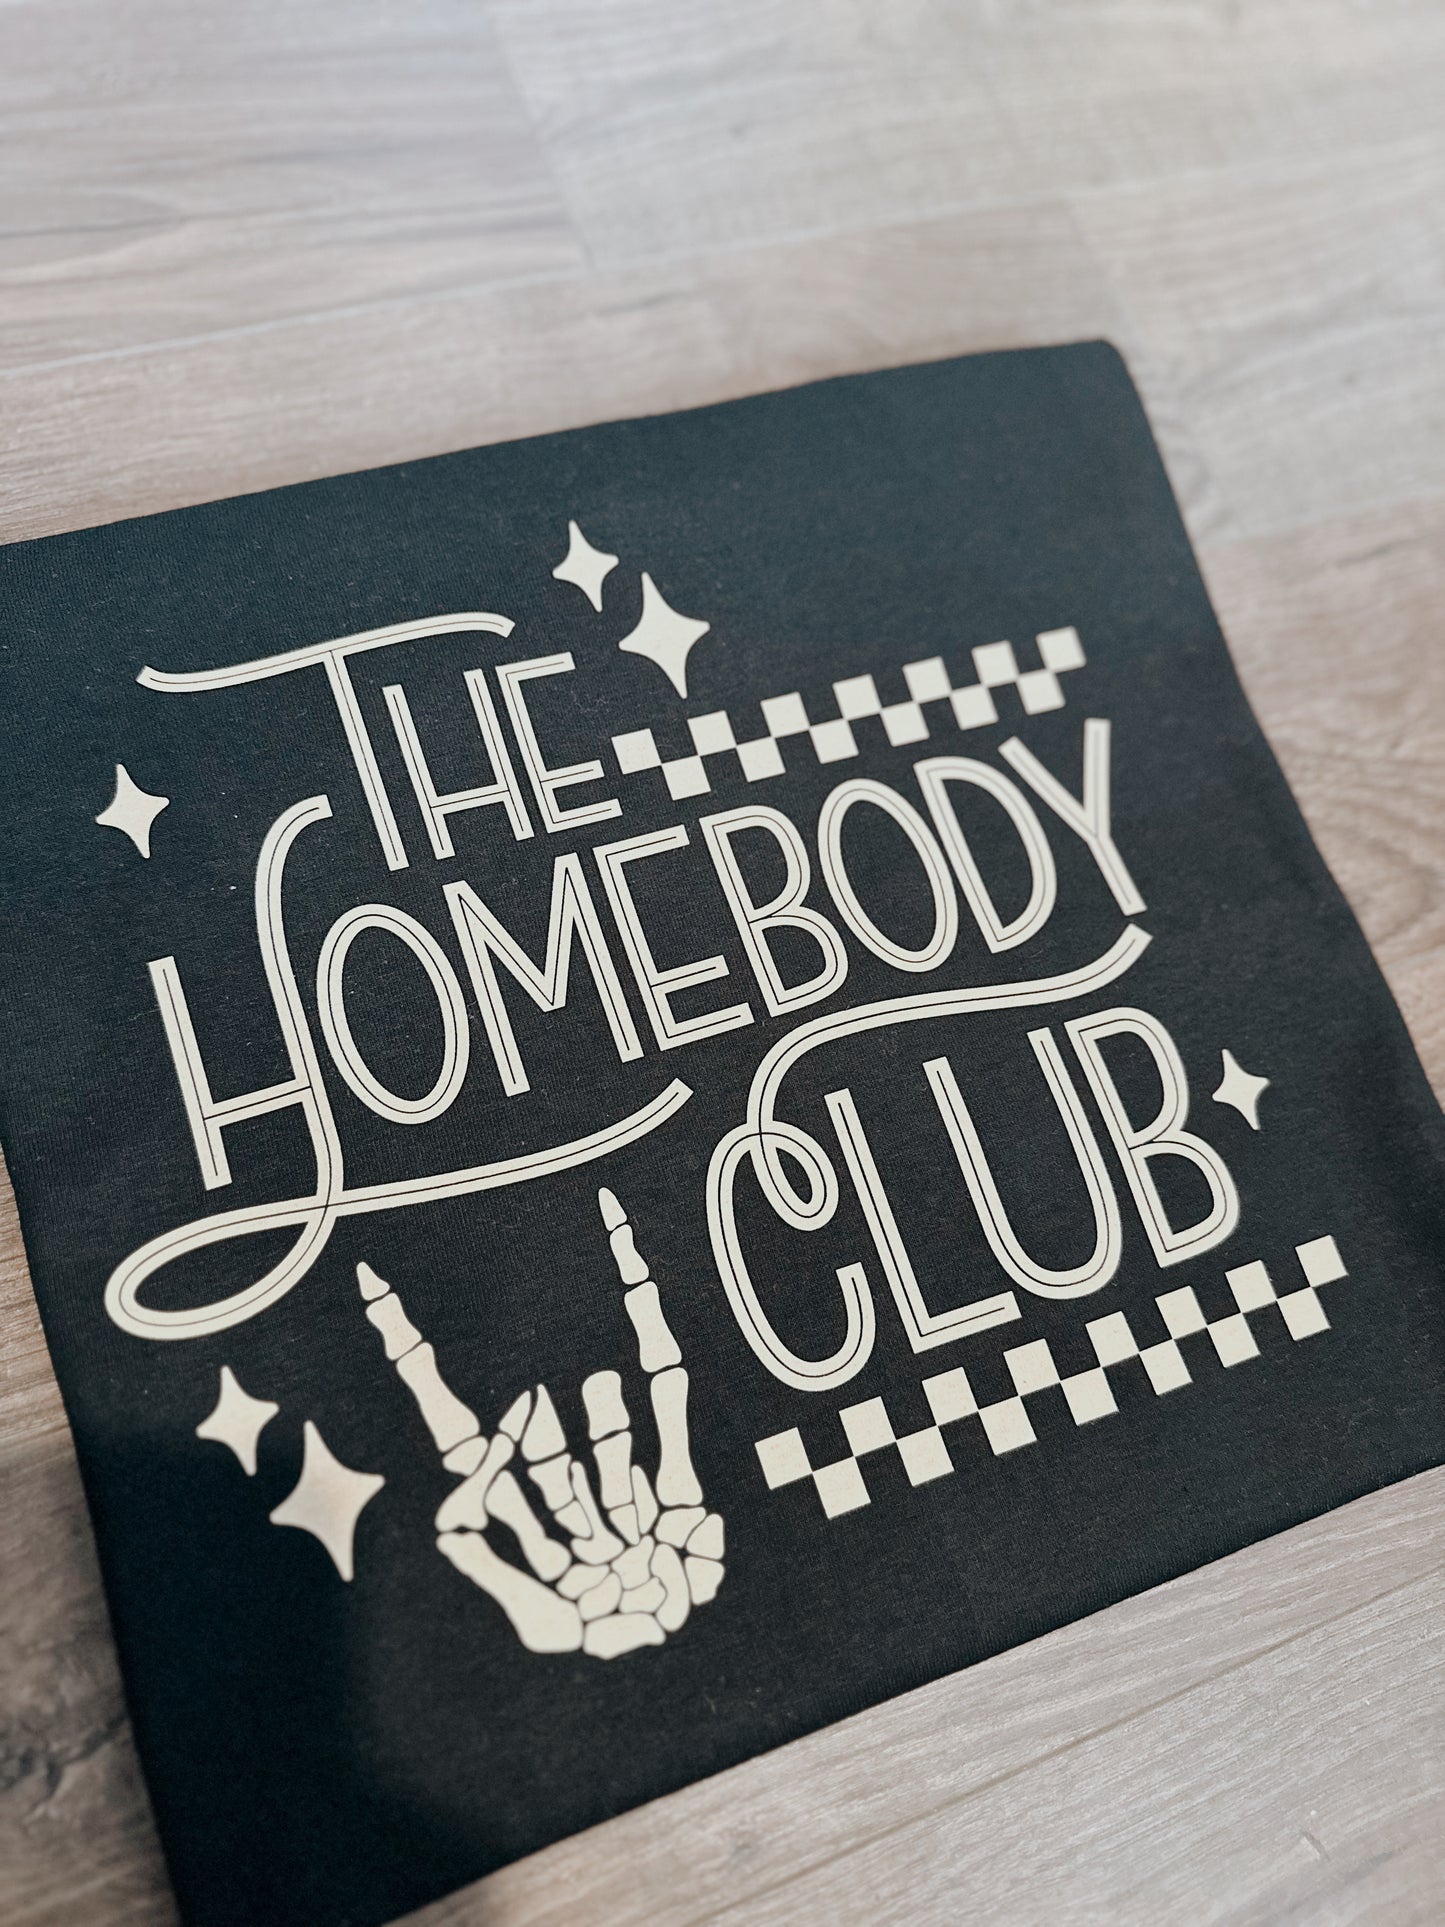 The Homebody Club | Tshirt